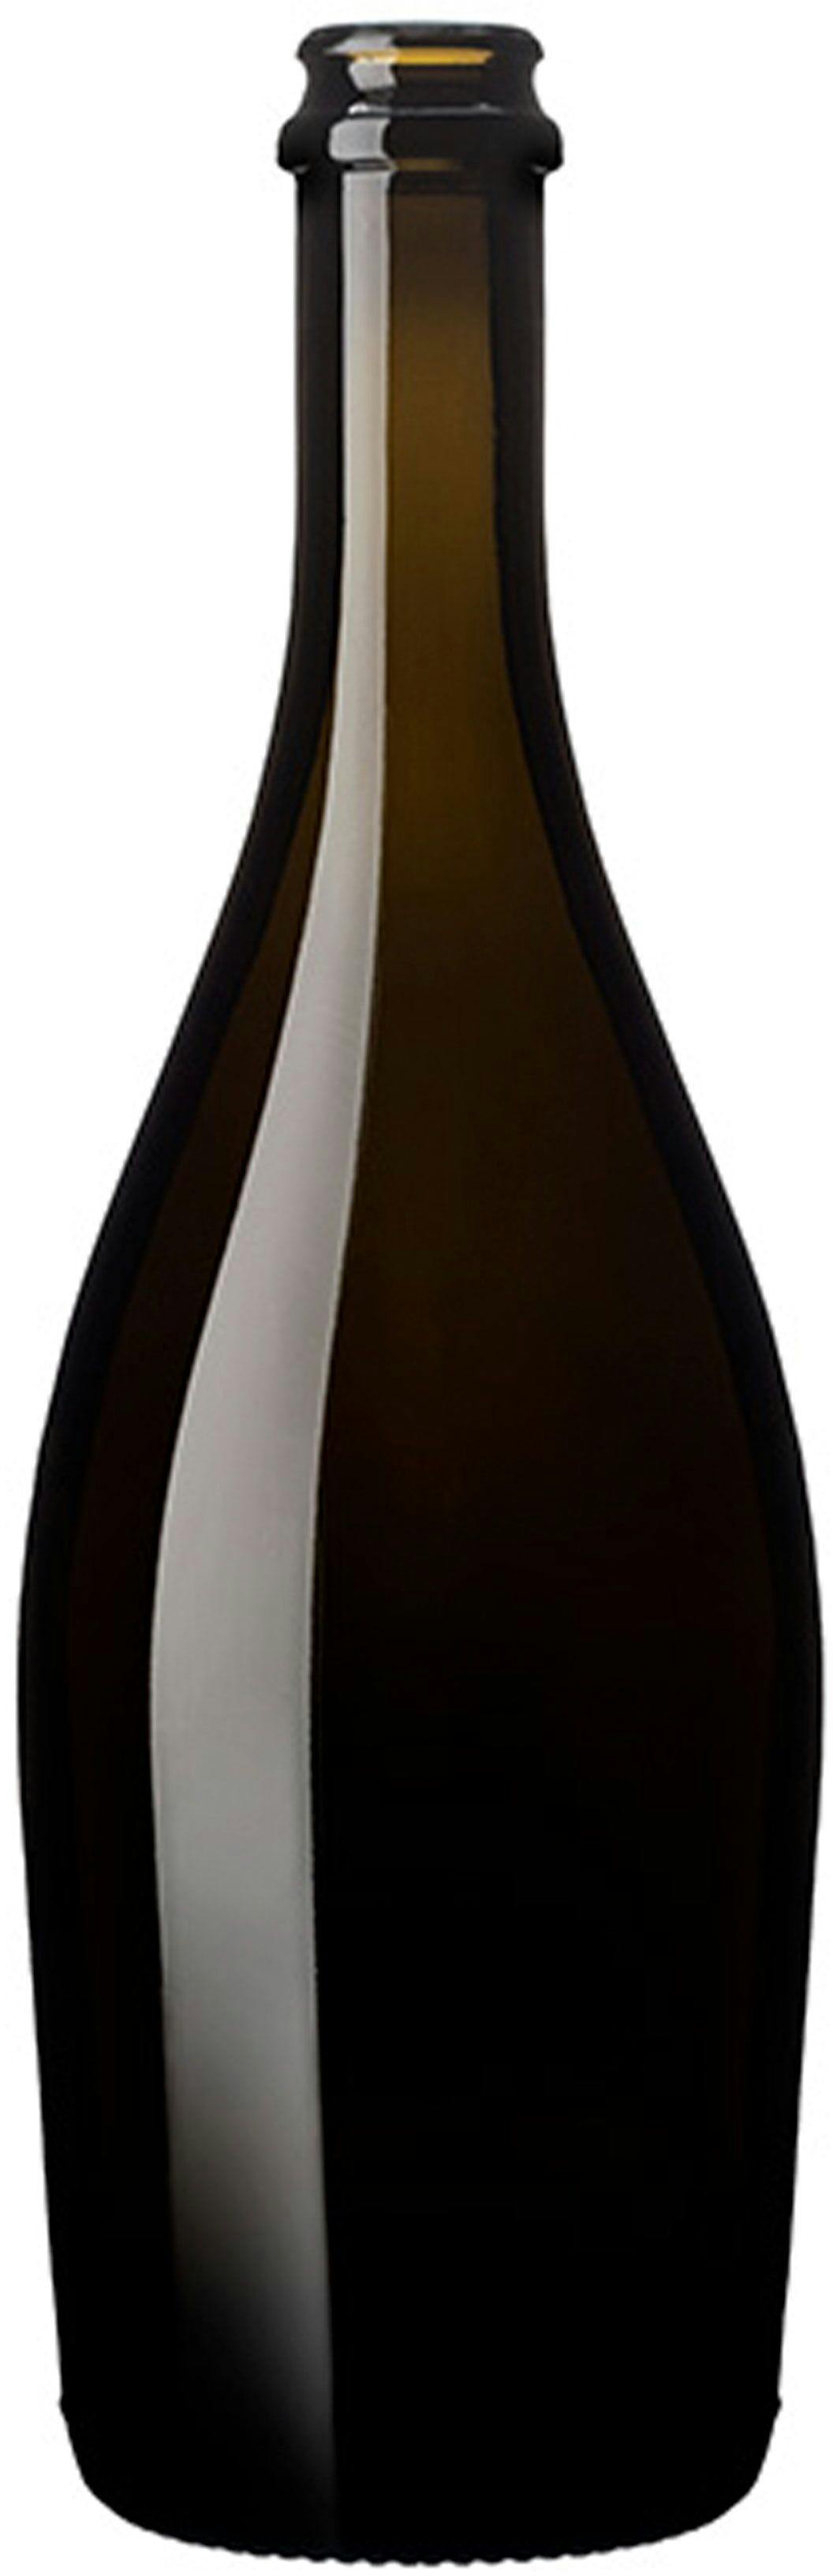 Bottle COLLIO  LIGHT ETICH 750 ml BG-Crown